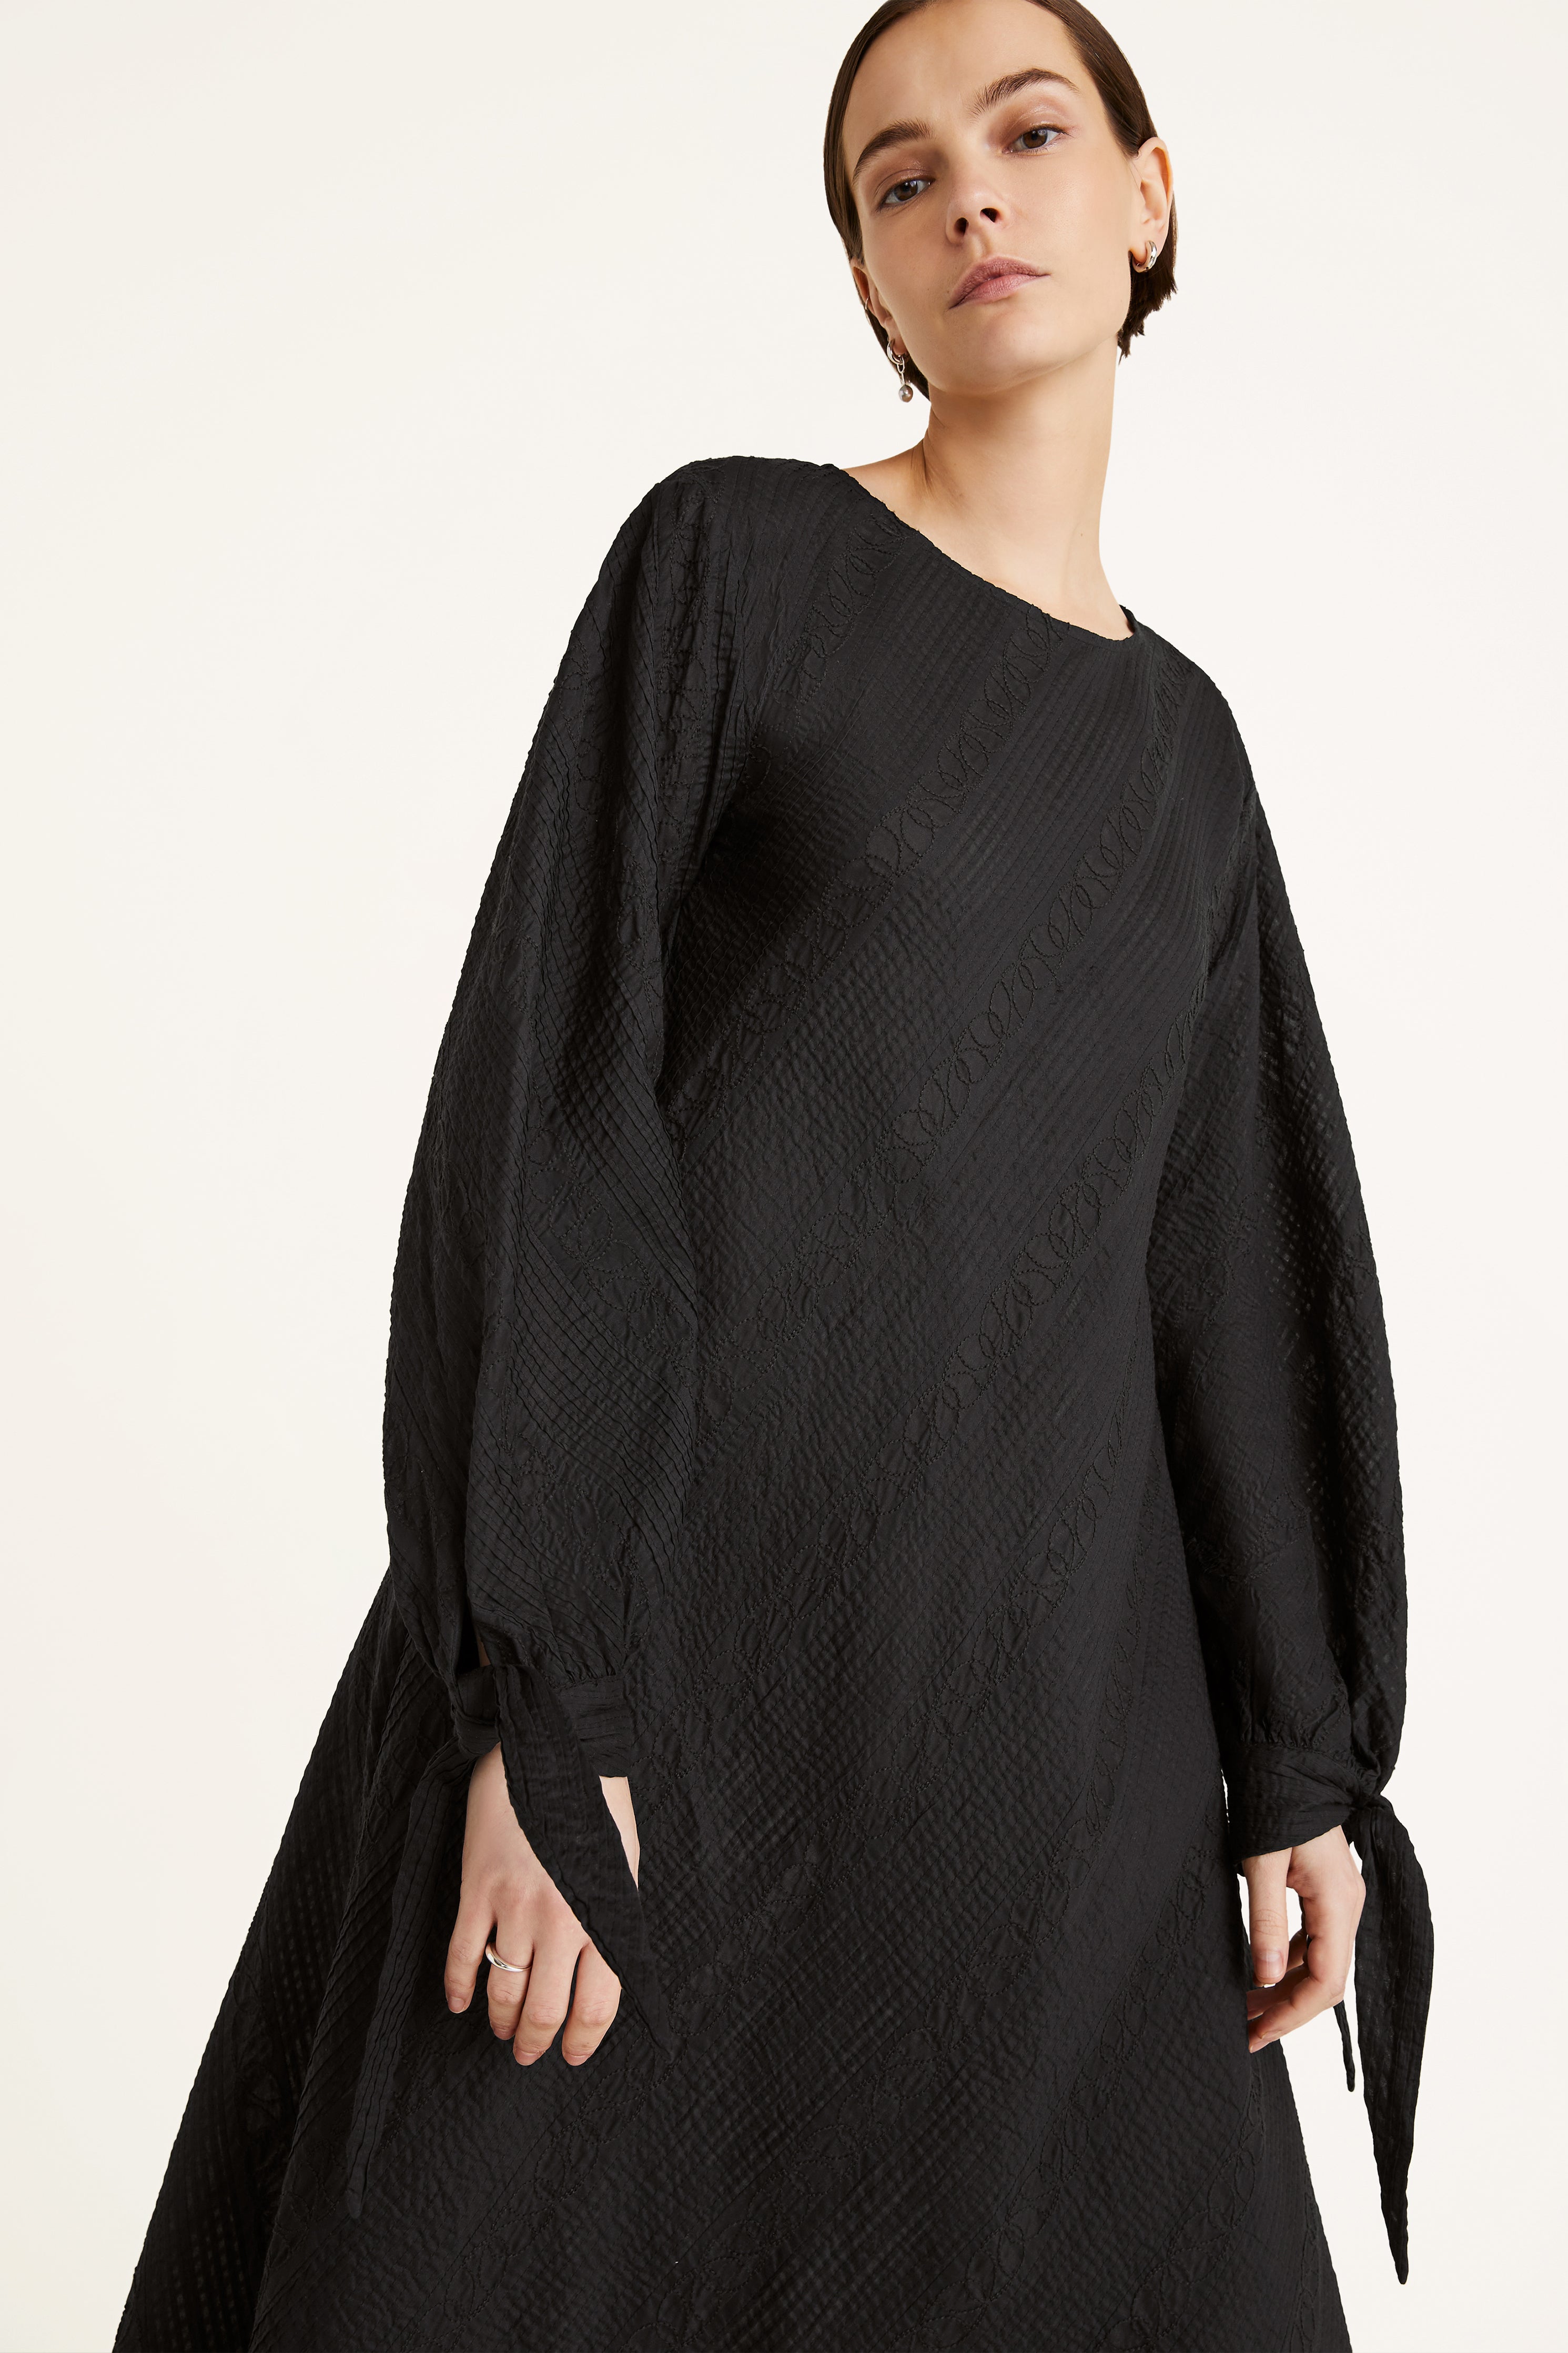 Merlette Alix Sweater in Byzantine – Dora Maar